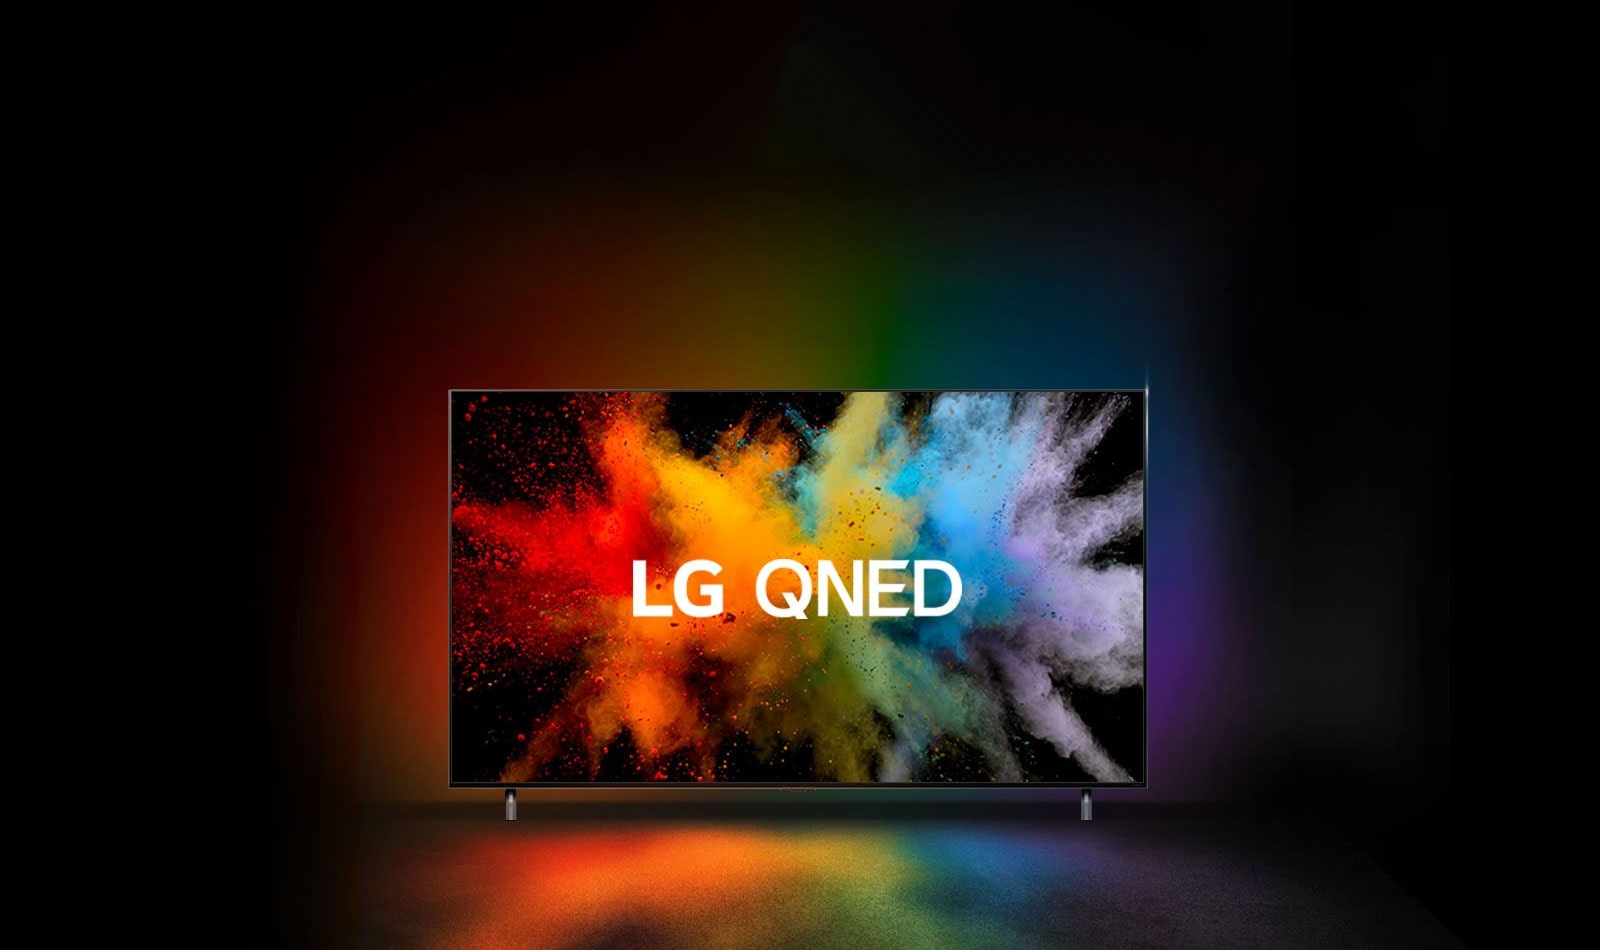 Телевизор LG QNED в темной комнате. Разноцветный порошок создает эффект взрыва радуги на телевизоре.